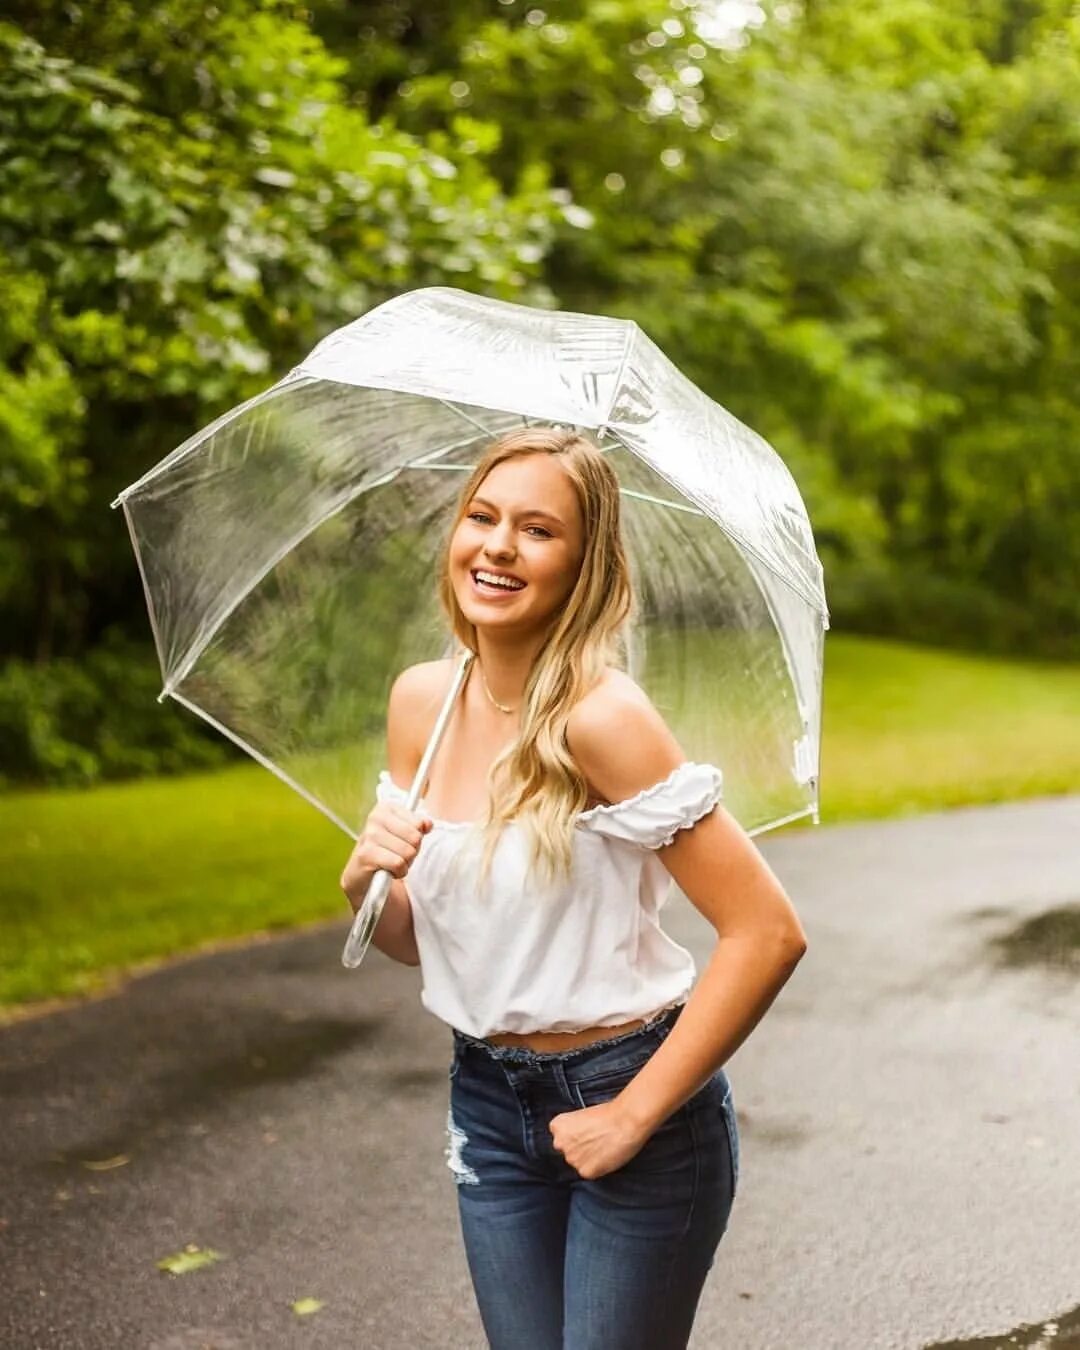 Зонт прозрачный красивый. Фотосессия с зонтом. Фотосет с зонтом. Девушка с прозрачным зонтом. Девушка под зонтиком